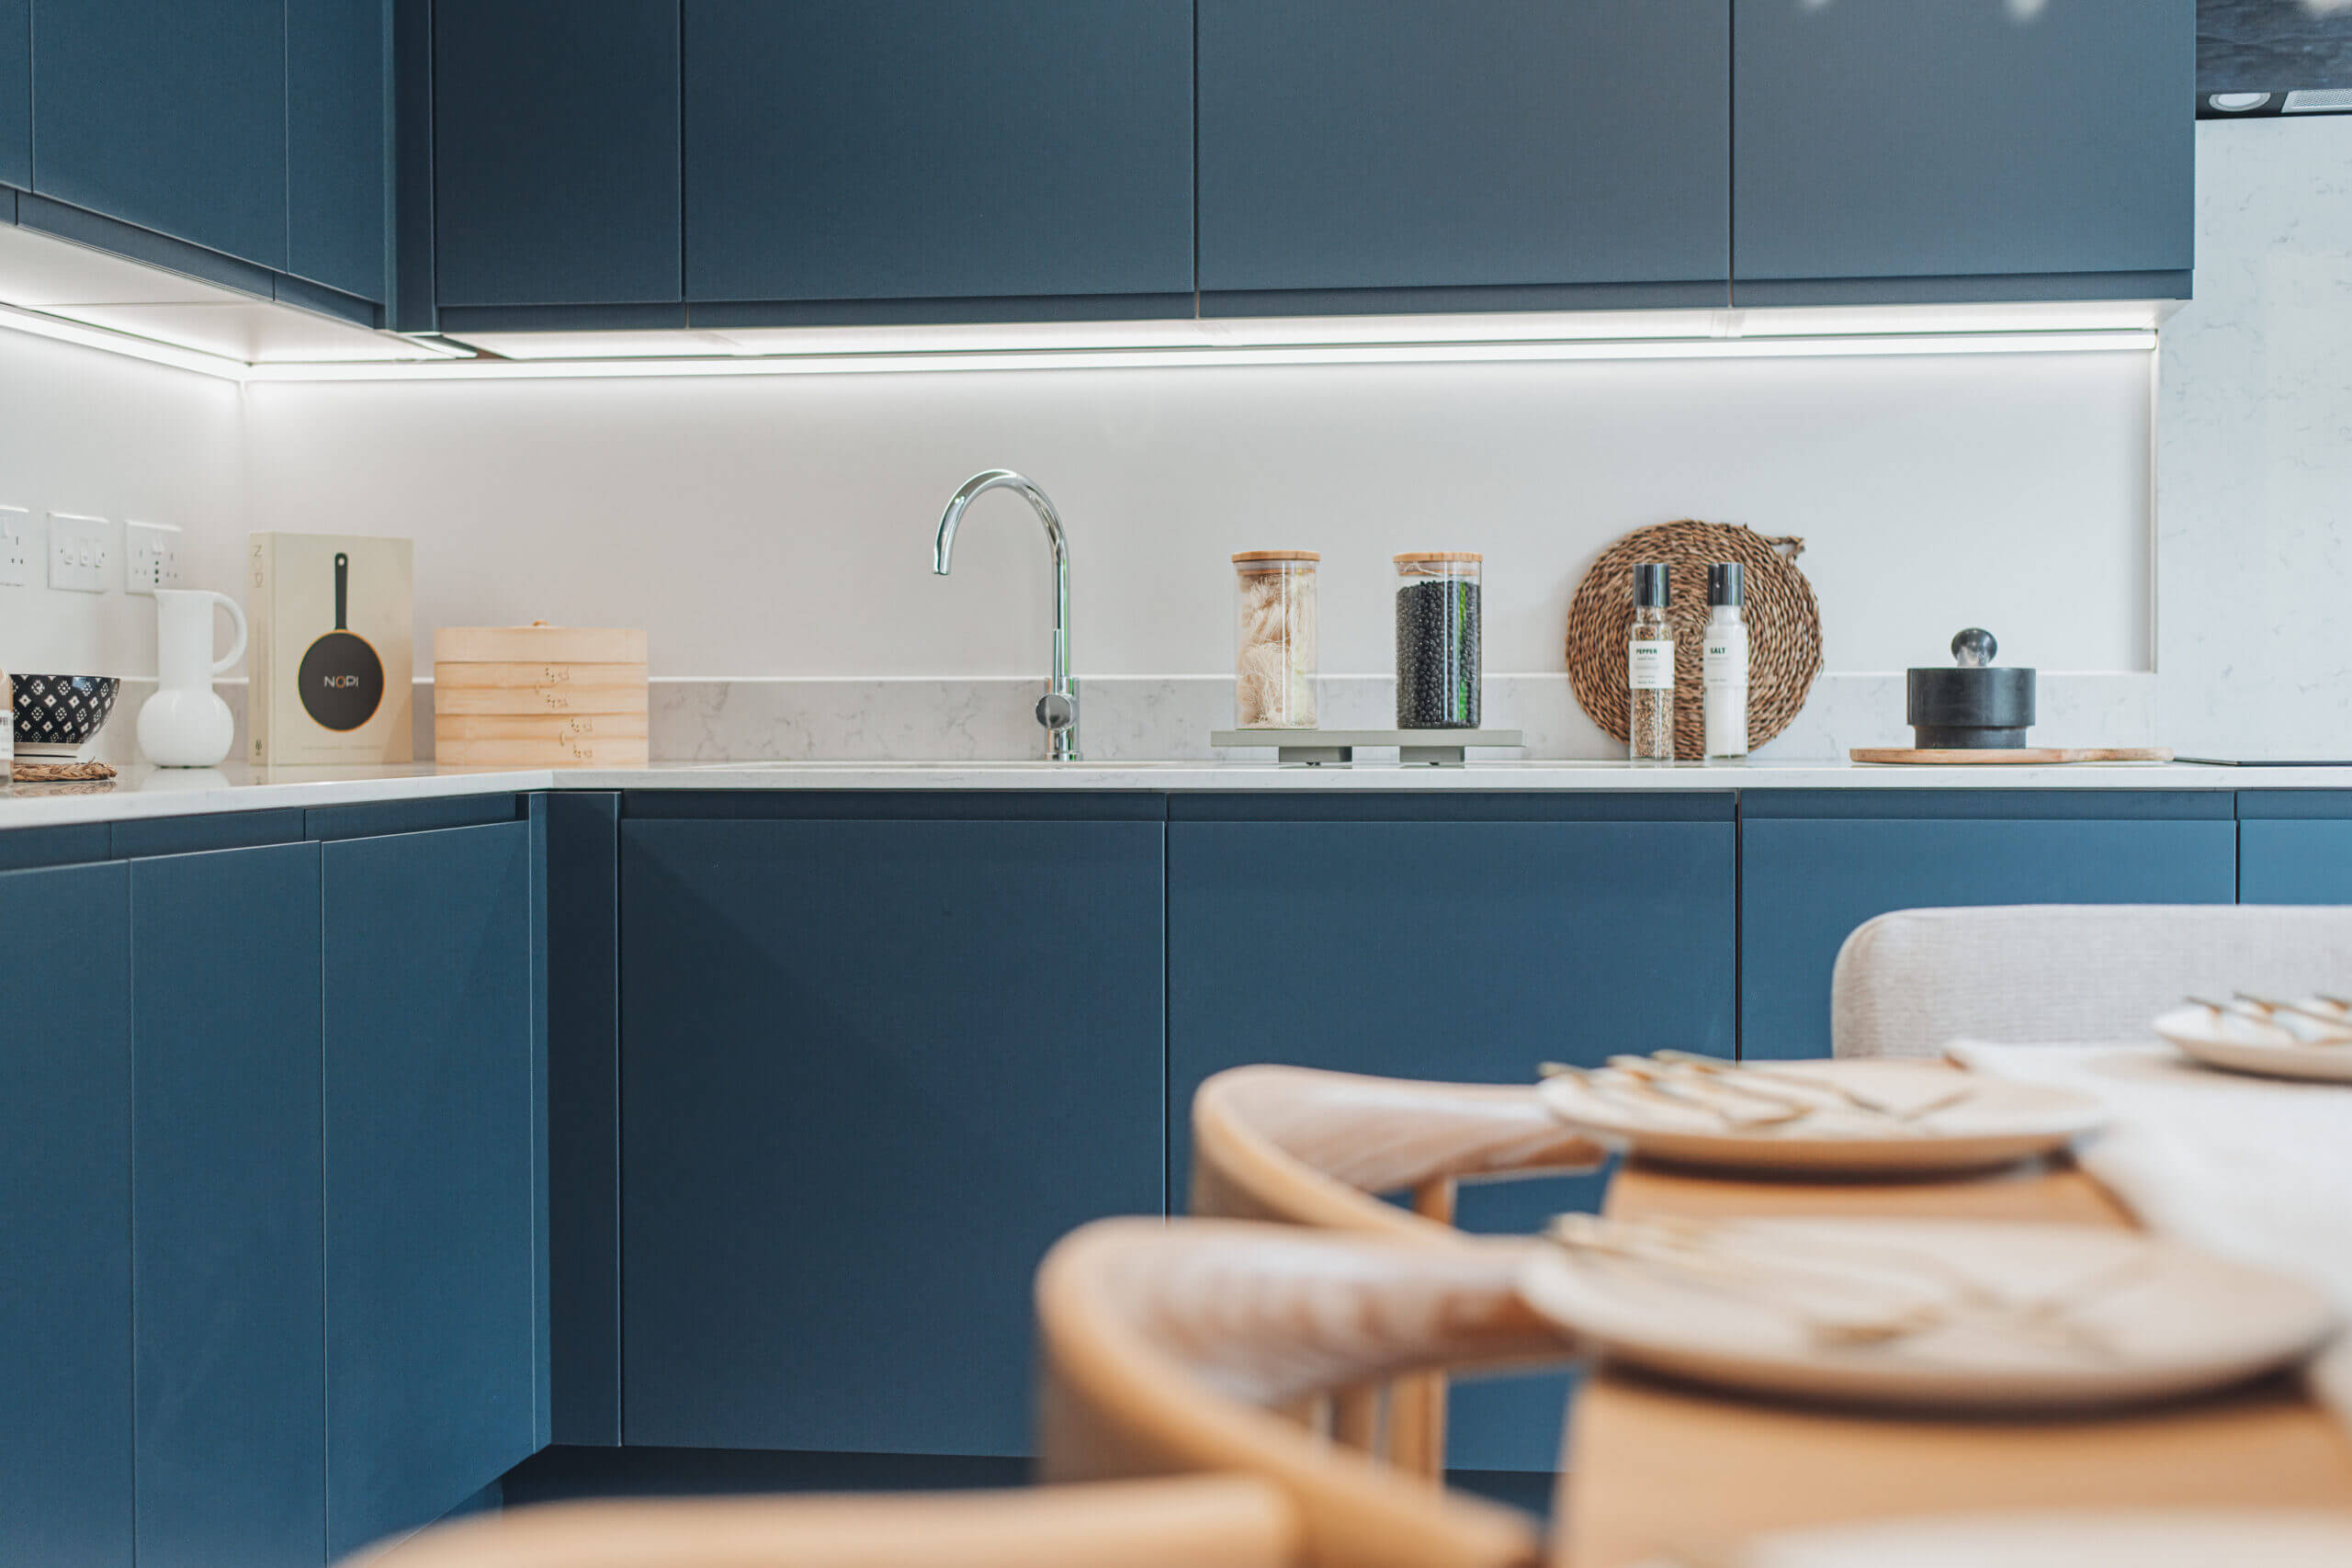 Flexible, modern kitchen built for family living